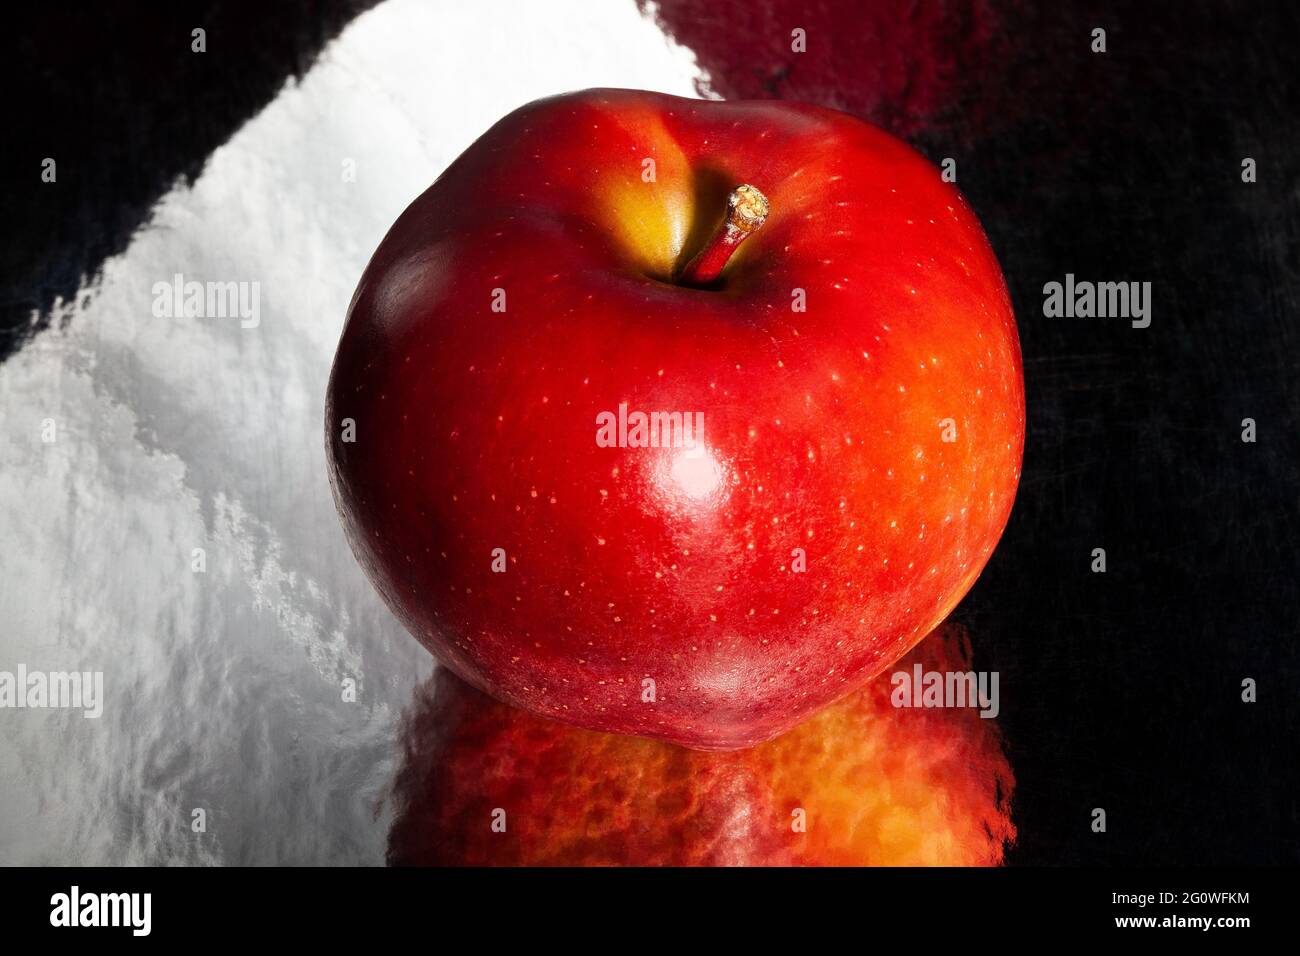 Roter köstlicher Apfel auf schwarzem reflektierendem Hintergrund Stockfoto